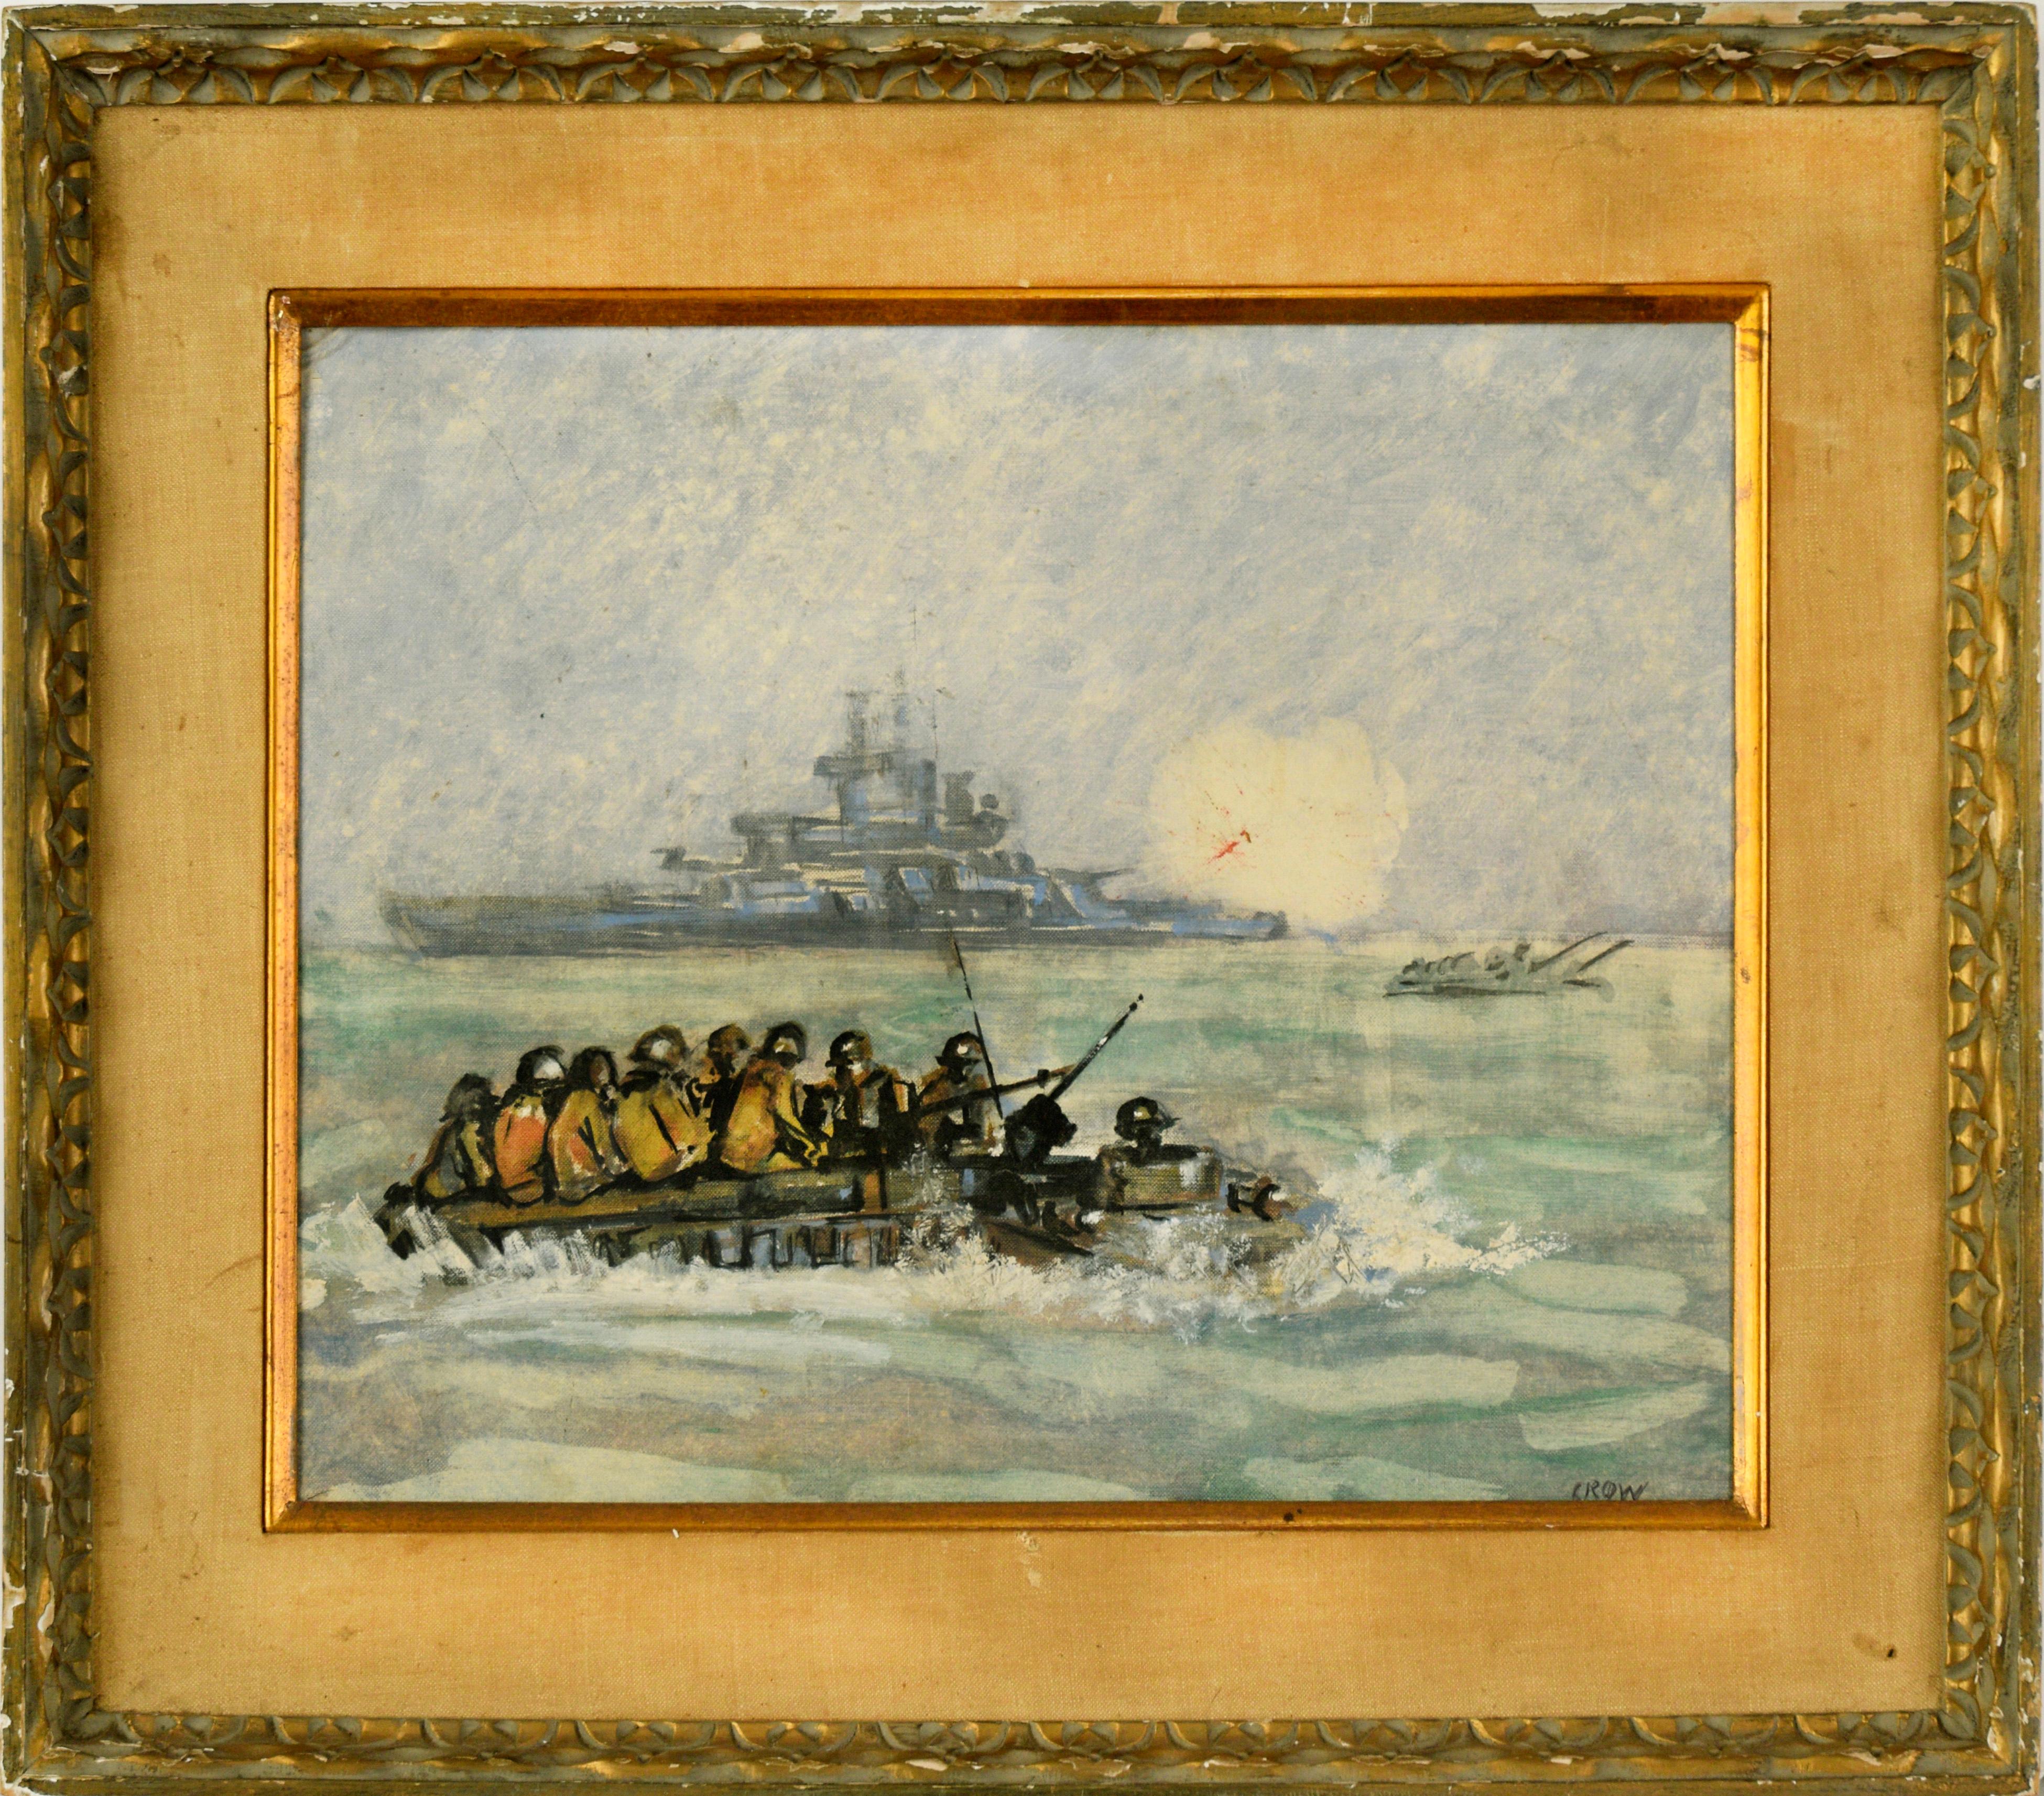 Soldats américains débarquant sur des bateaux avec des navires de guerre tirant au loin